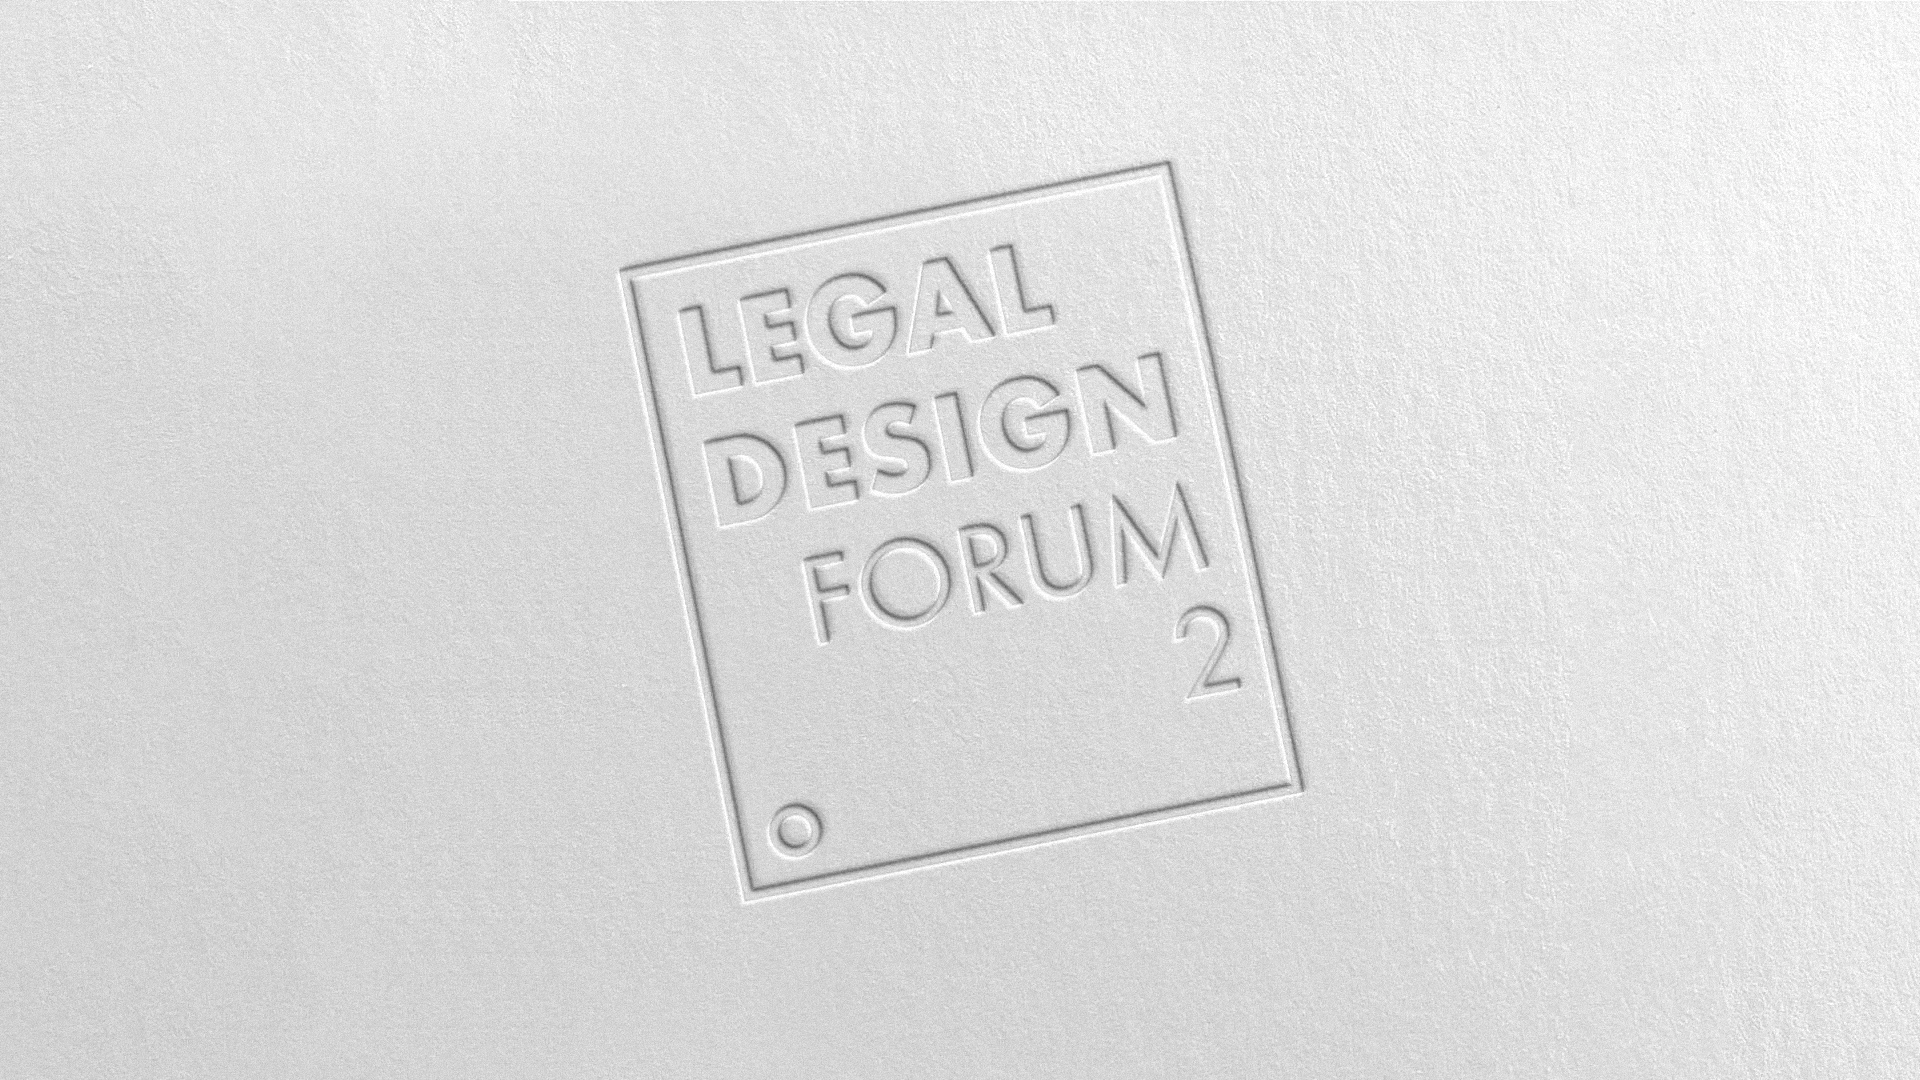 Legal Design Forum 2